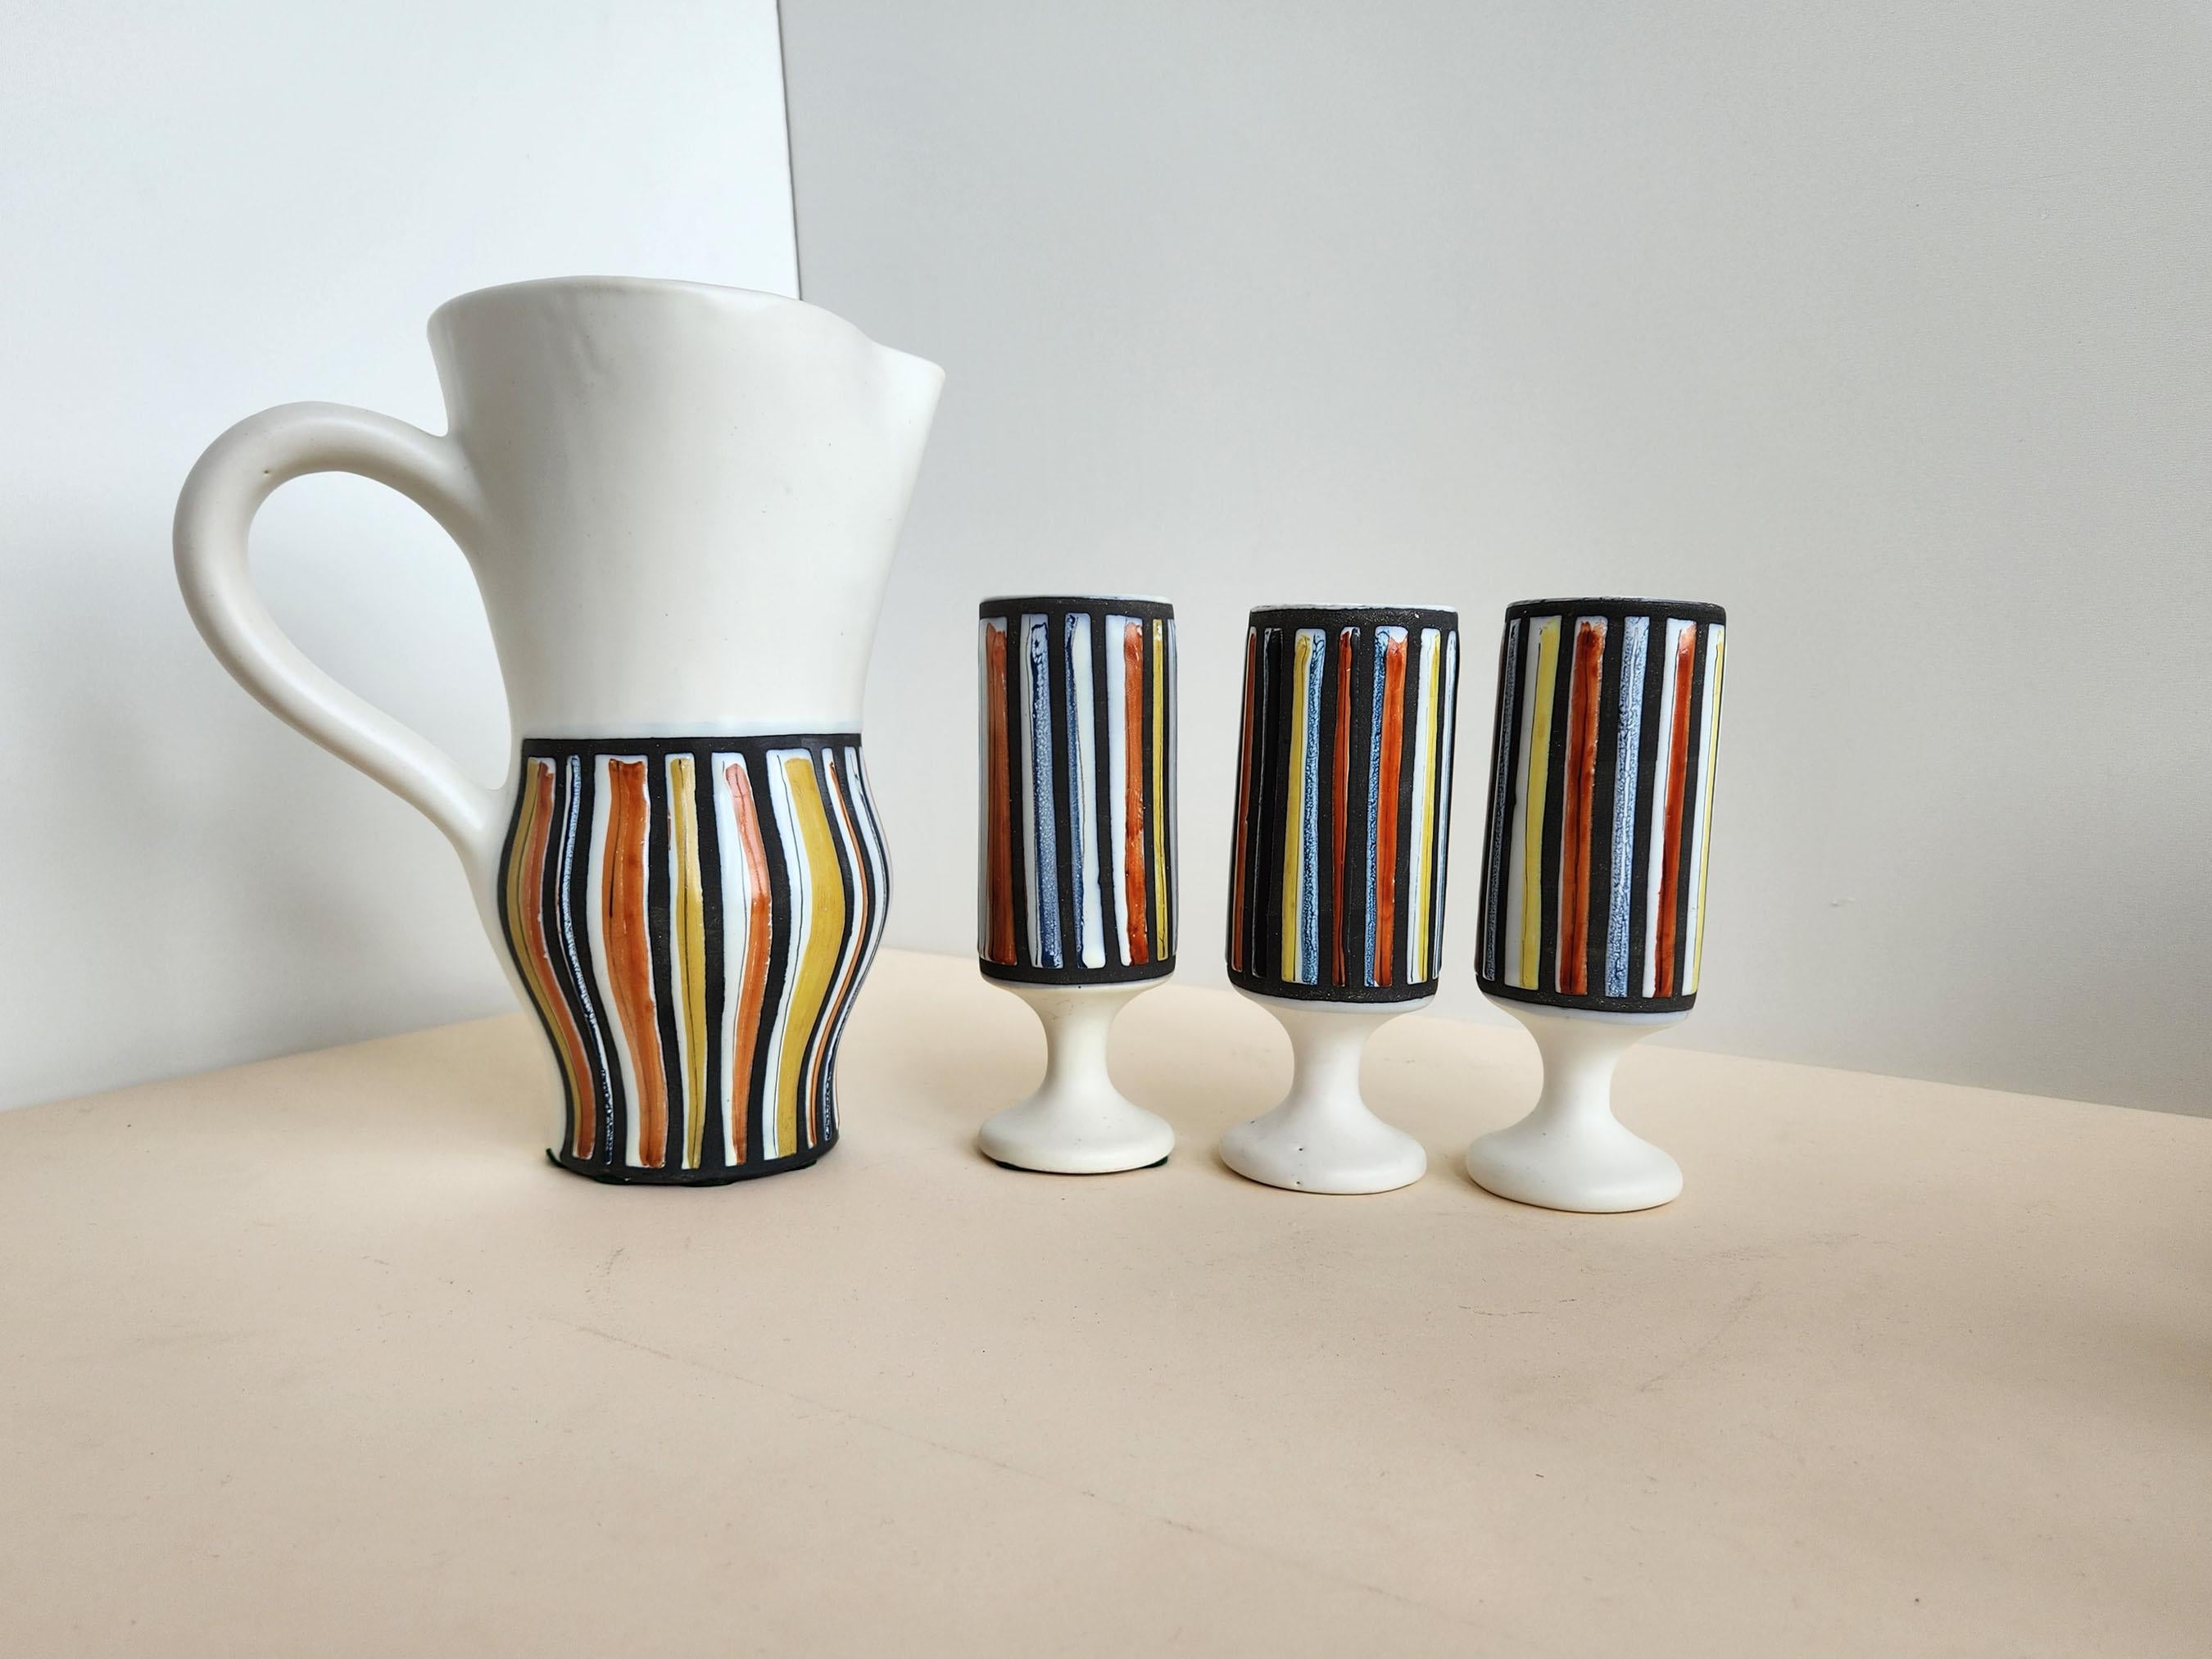 Vintage Keramik Krug und 3 Pokale mit vertikalen Streifen signiert von Roger Capron - Vallauris, Frankreich

Roger Capron war ein einflussreicher französischer Keramiker, der für seine gekachelten Tische und die Verwendung wiederkehrender Motive wie